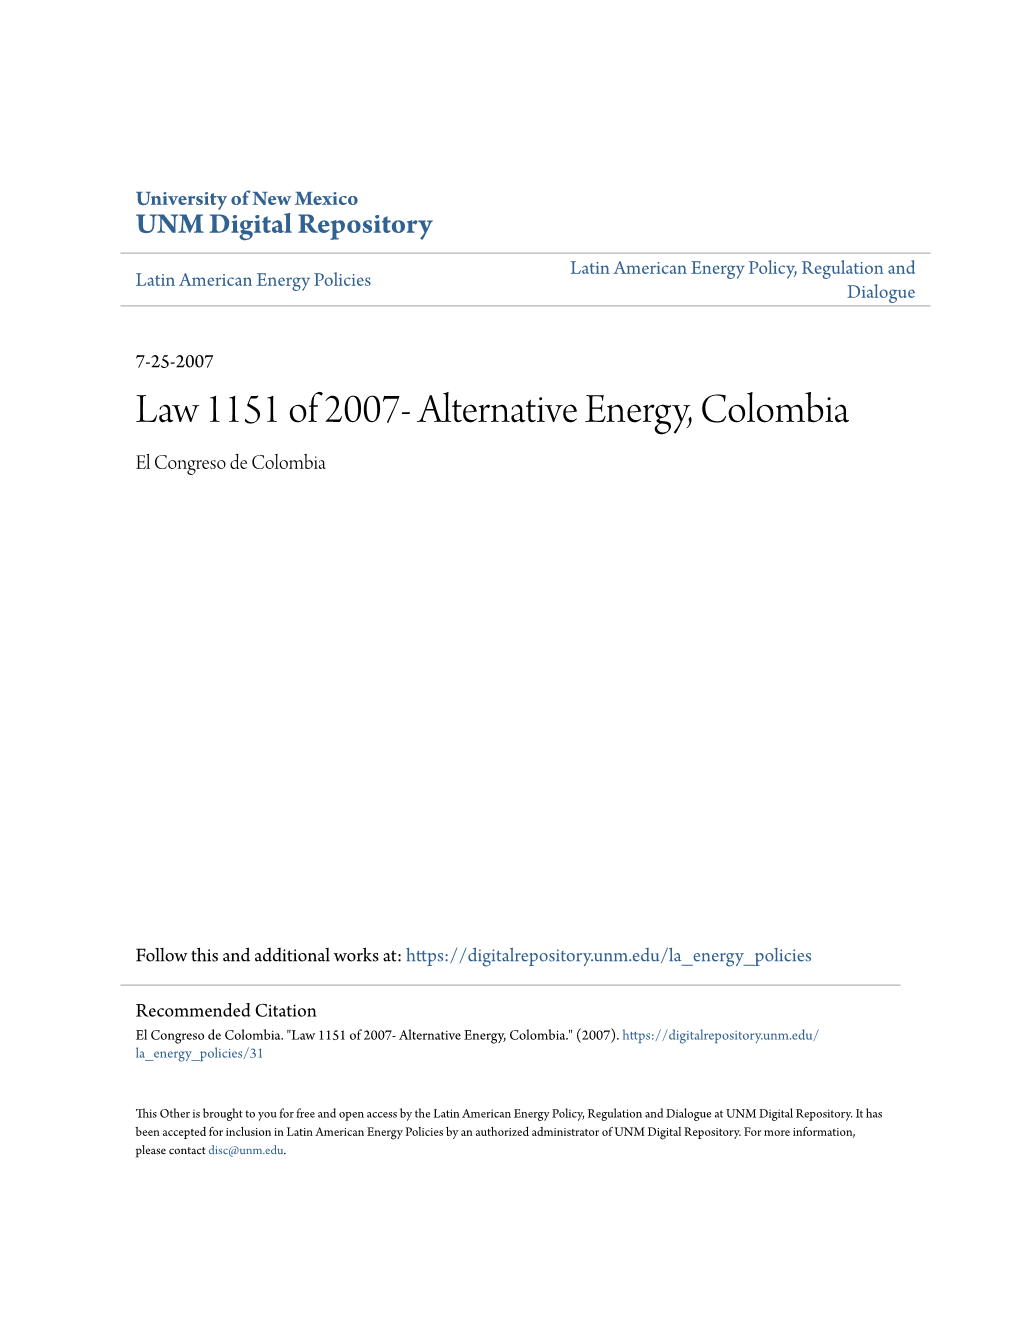 Alternative Energy, Colombia El Congreso De Colombia